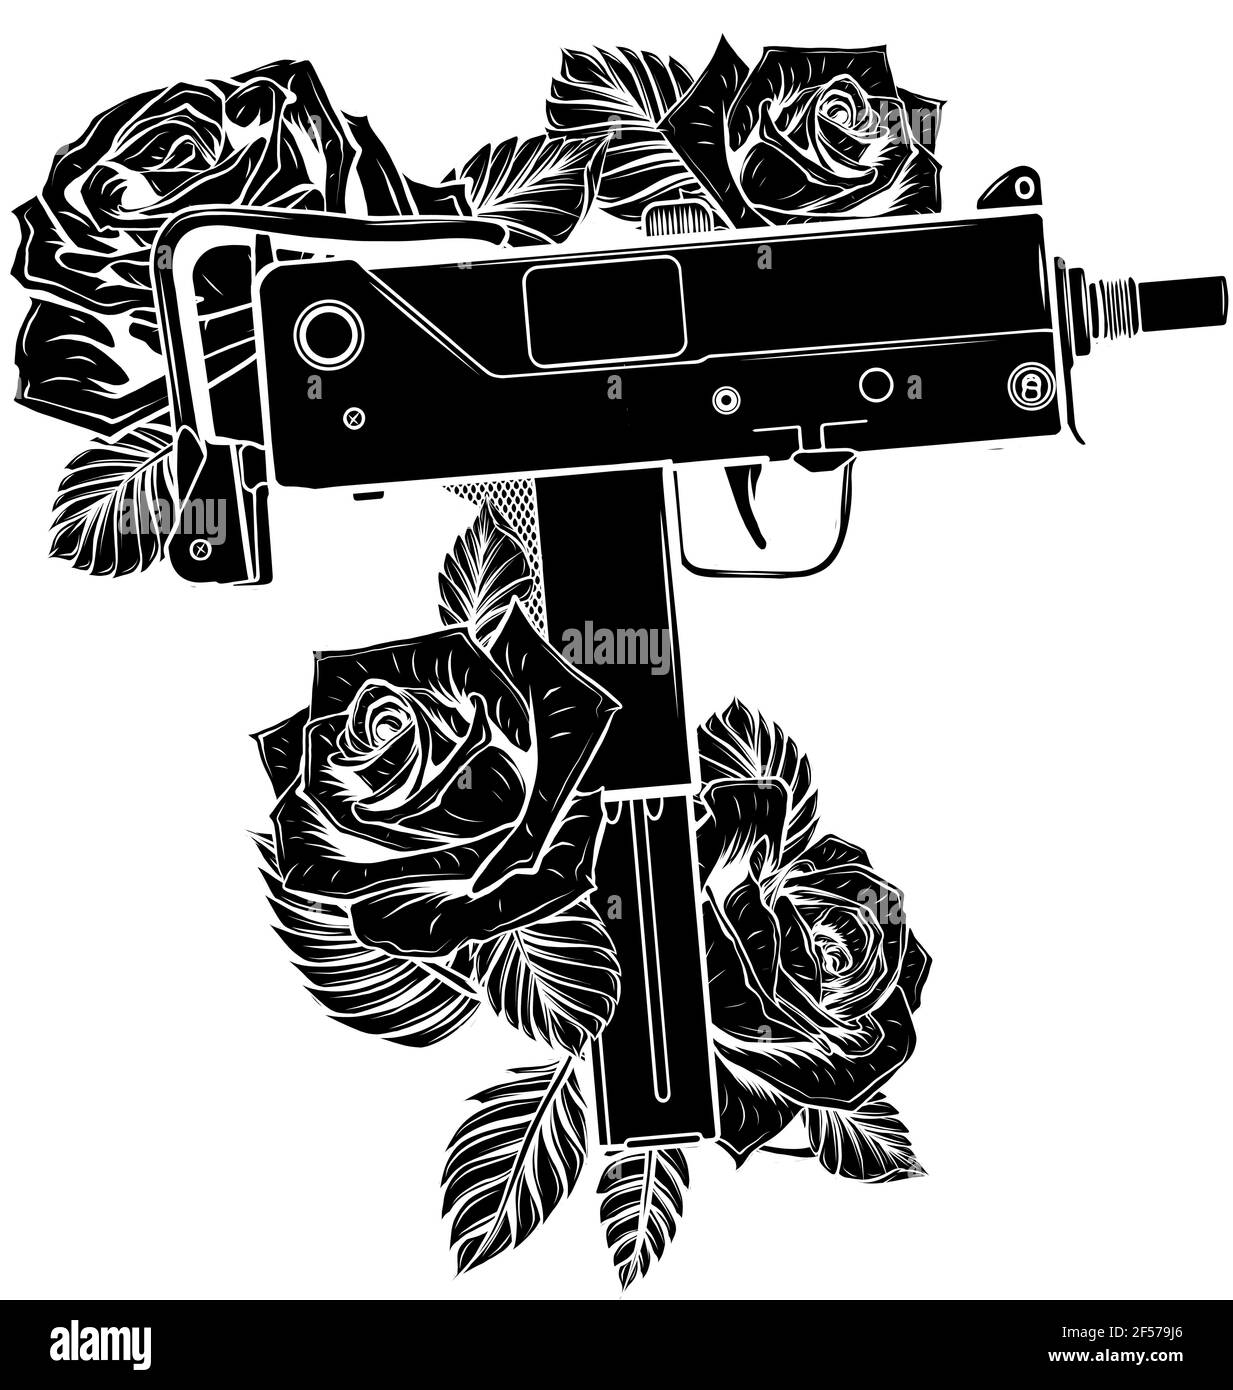 Schwarze Silhouette von Waffen Uzi mit Rosen Vektor Illustration Stock Vektor